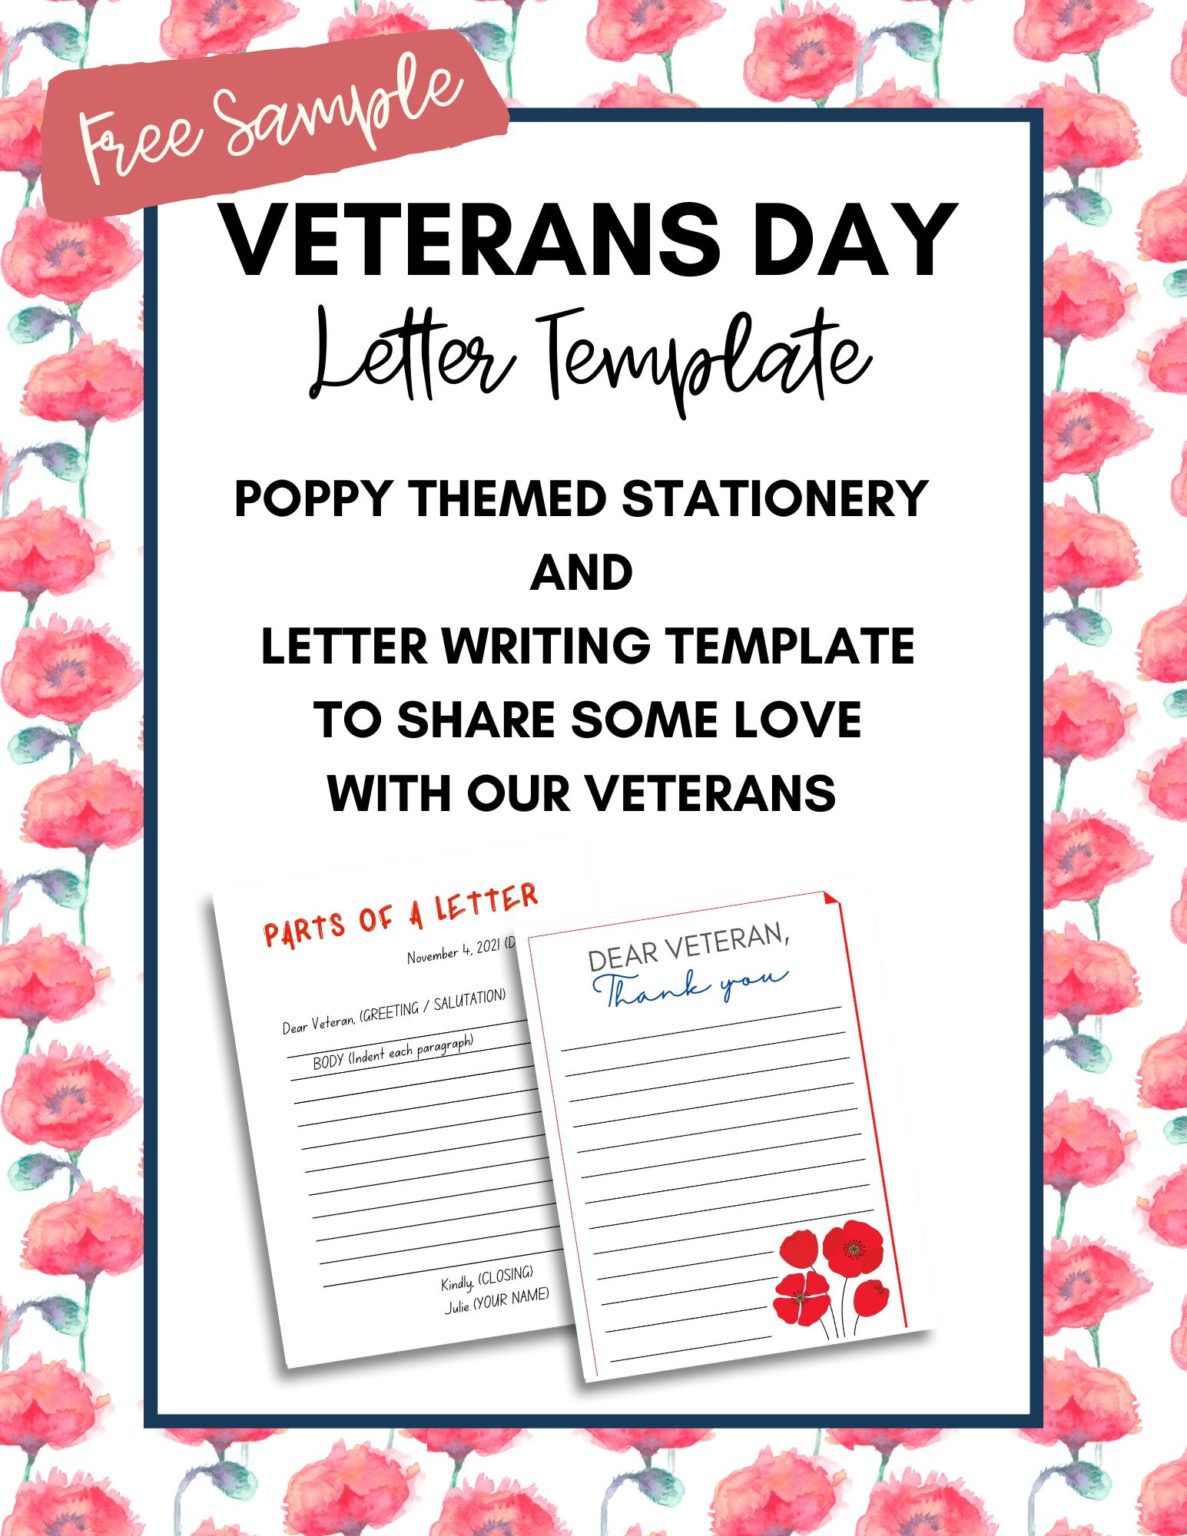 veterans-day-letter-template